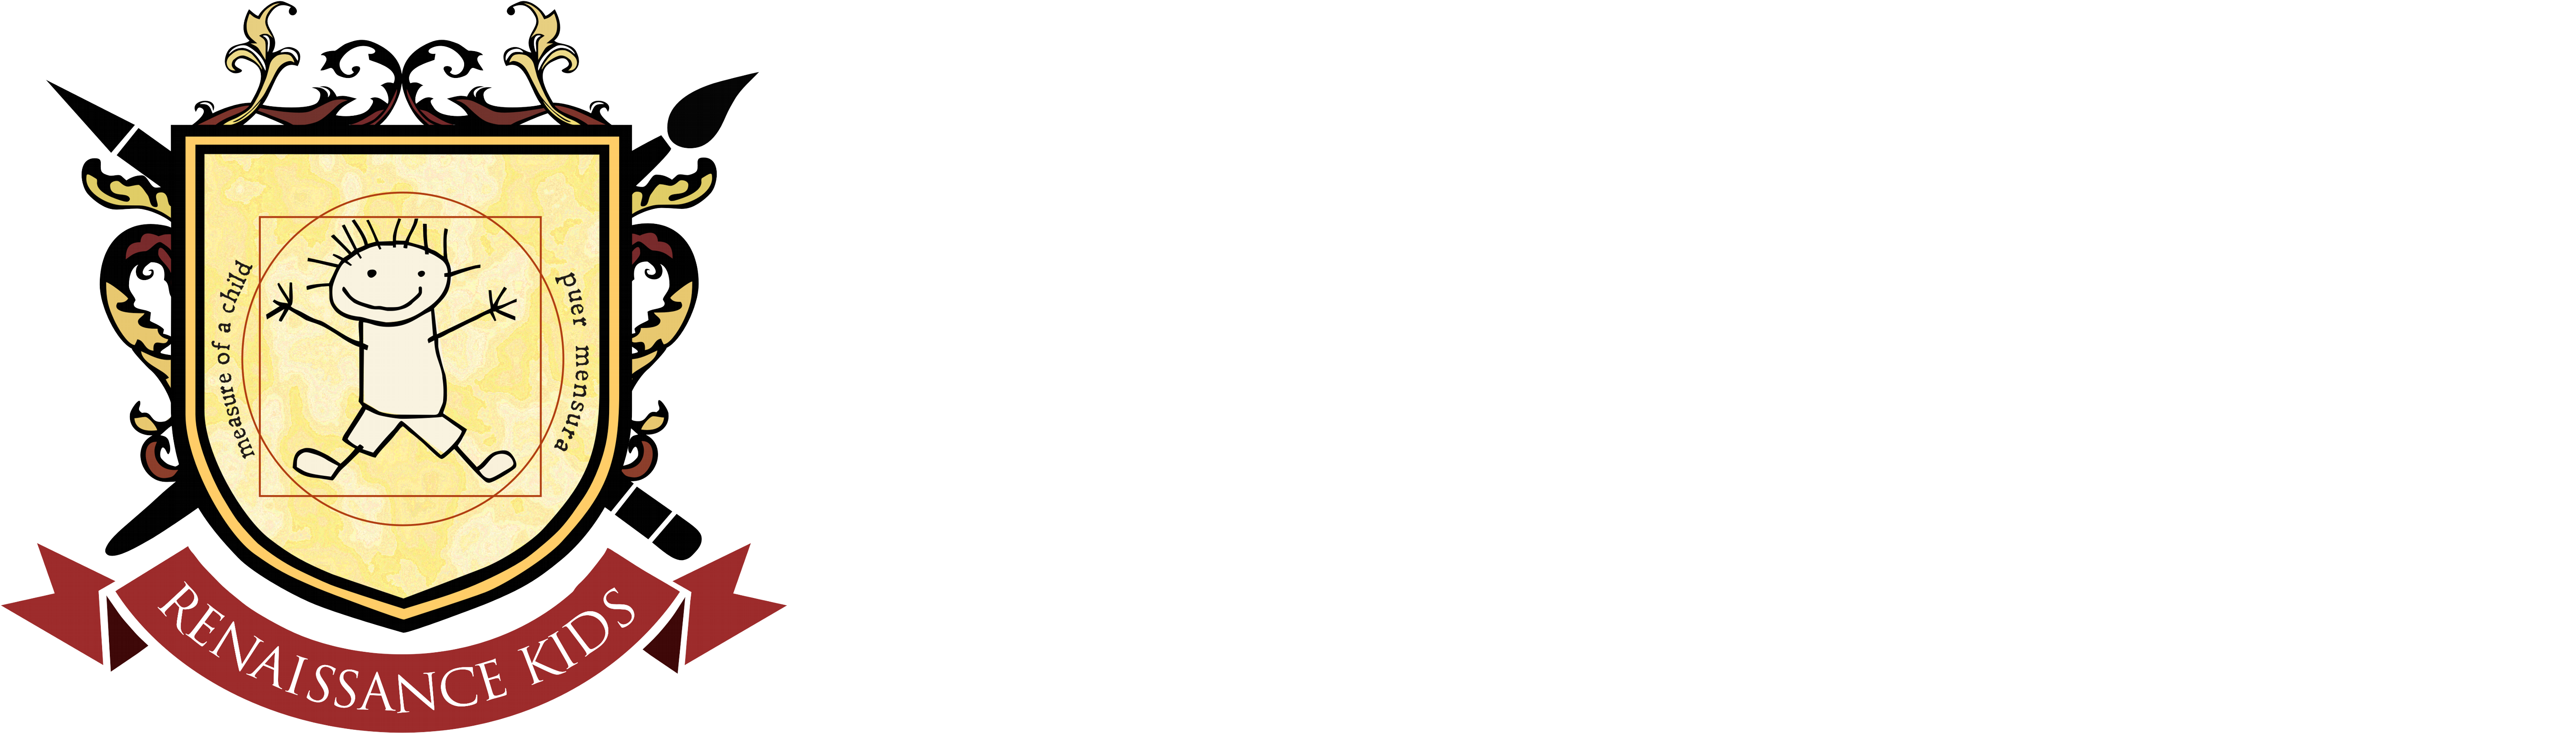 Logo Logo Logo Logo Logo - Renaissance Kids (6000x2100)